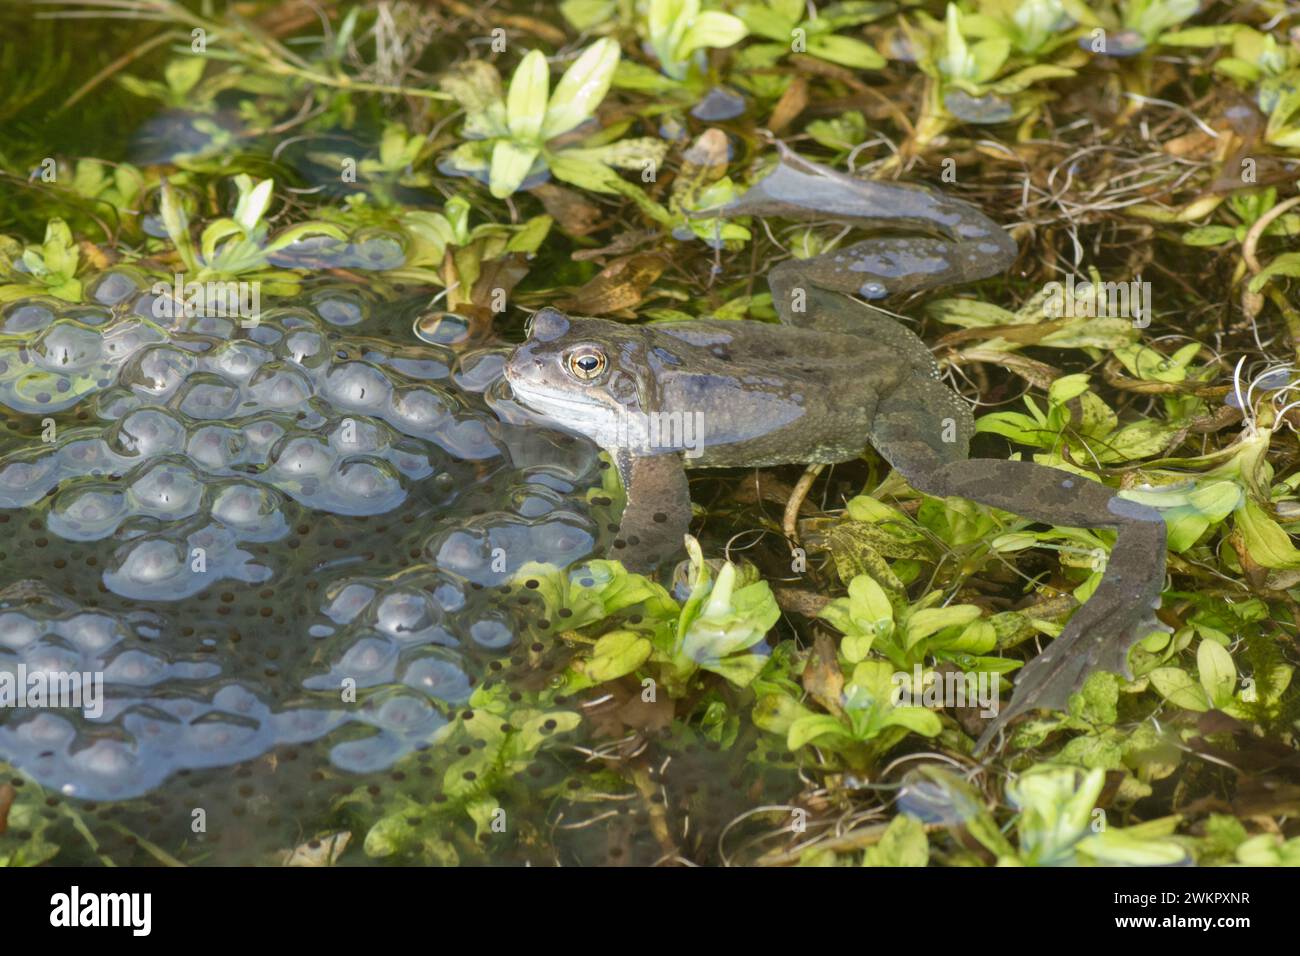 Grenouille Rousse, Rana temporaria, homme, l'attente sur le frai de grenouille dans l'étang de reproduction pour les femelles d'arriver pour le frai, Février, étang de jardin Banque D'Images